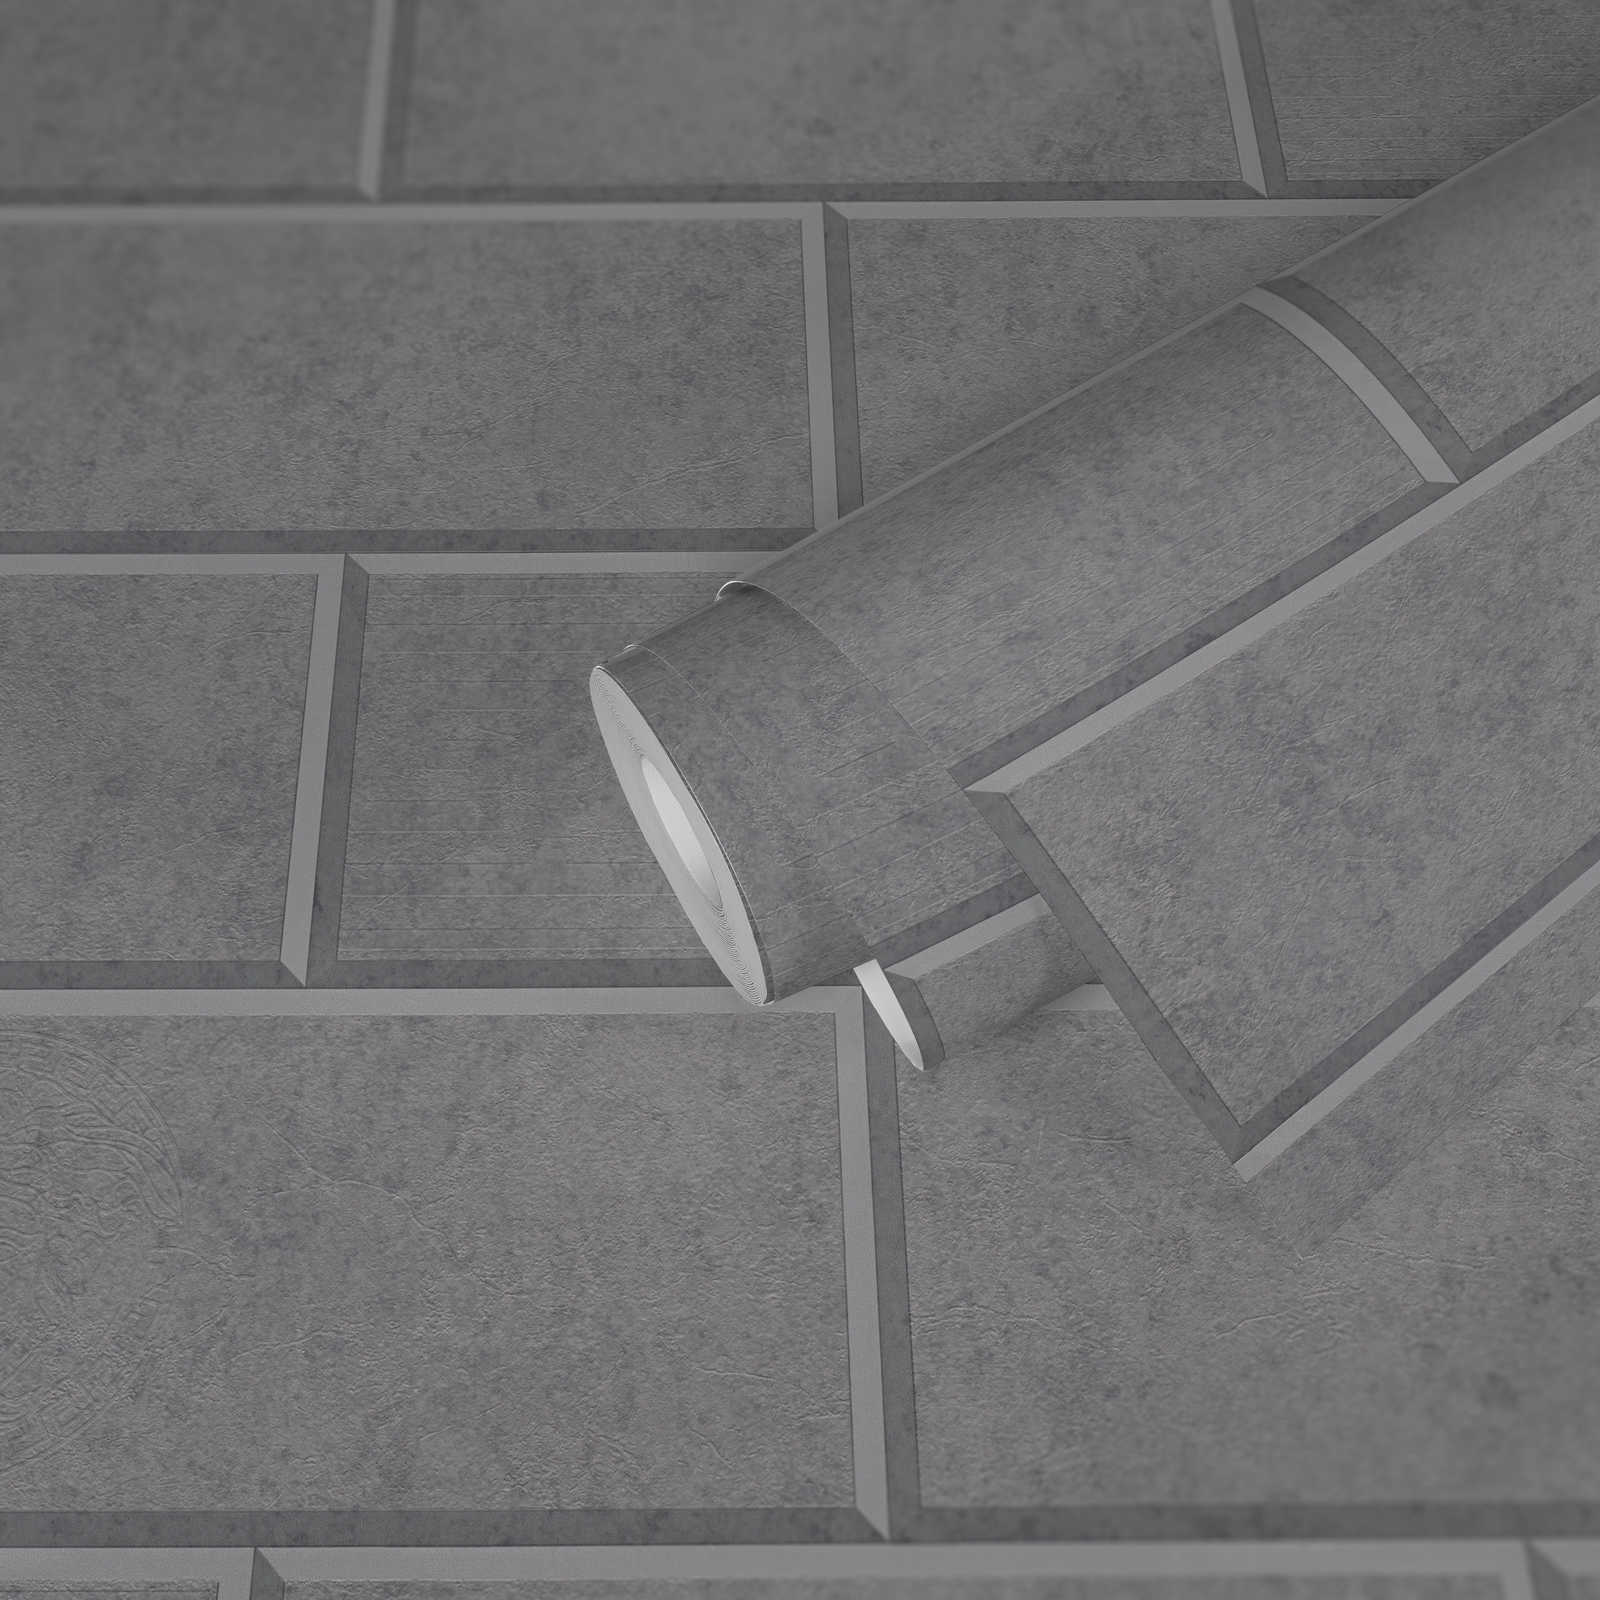             Tapete 3D Steinwand Design mit Betonsteinen – Grau
        